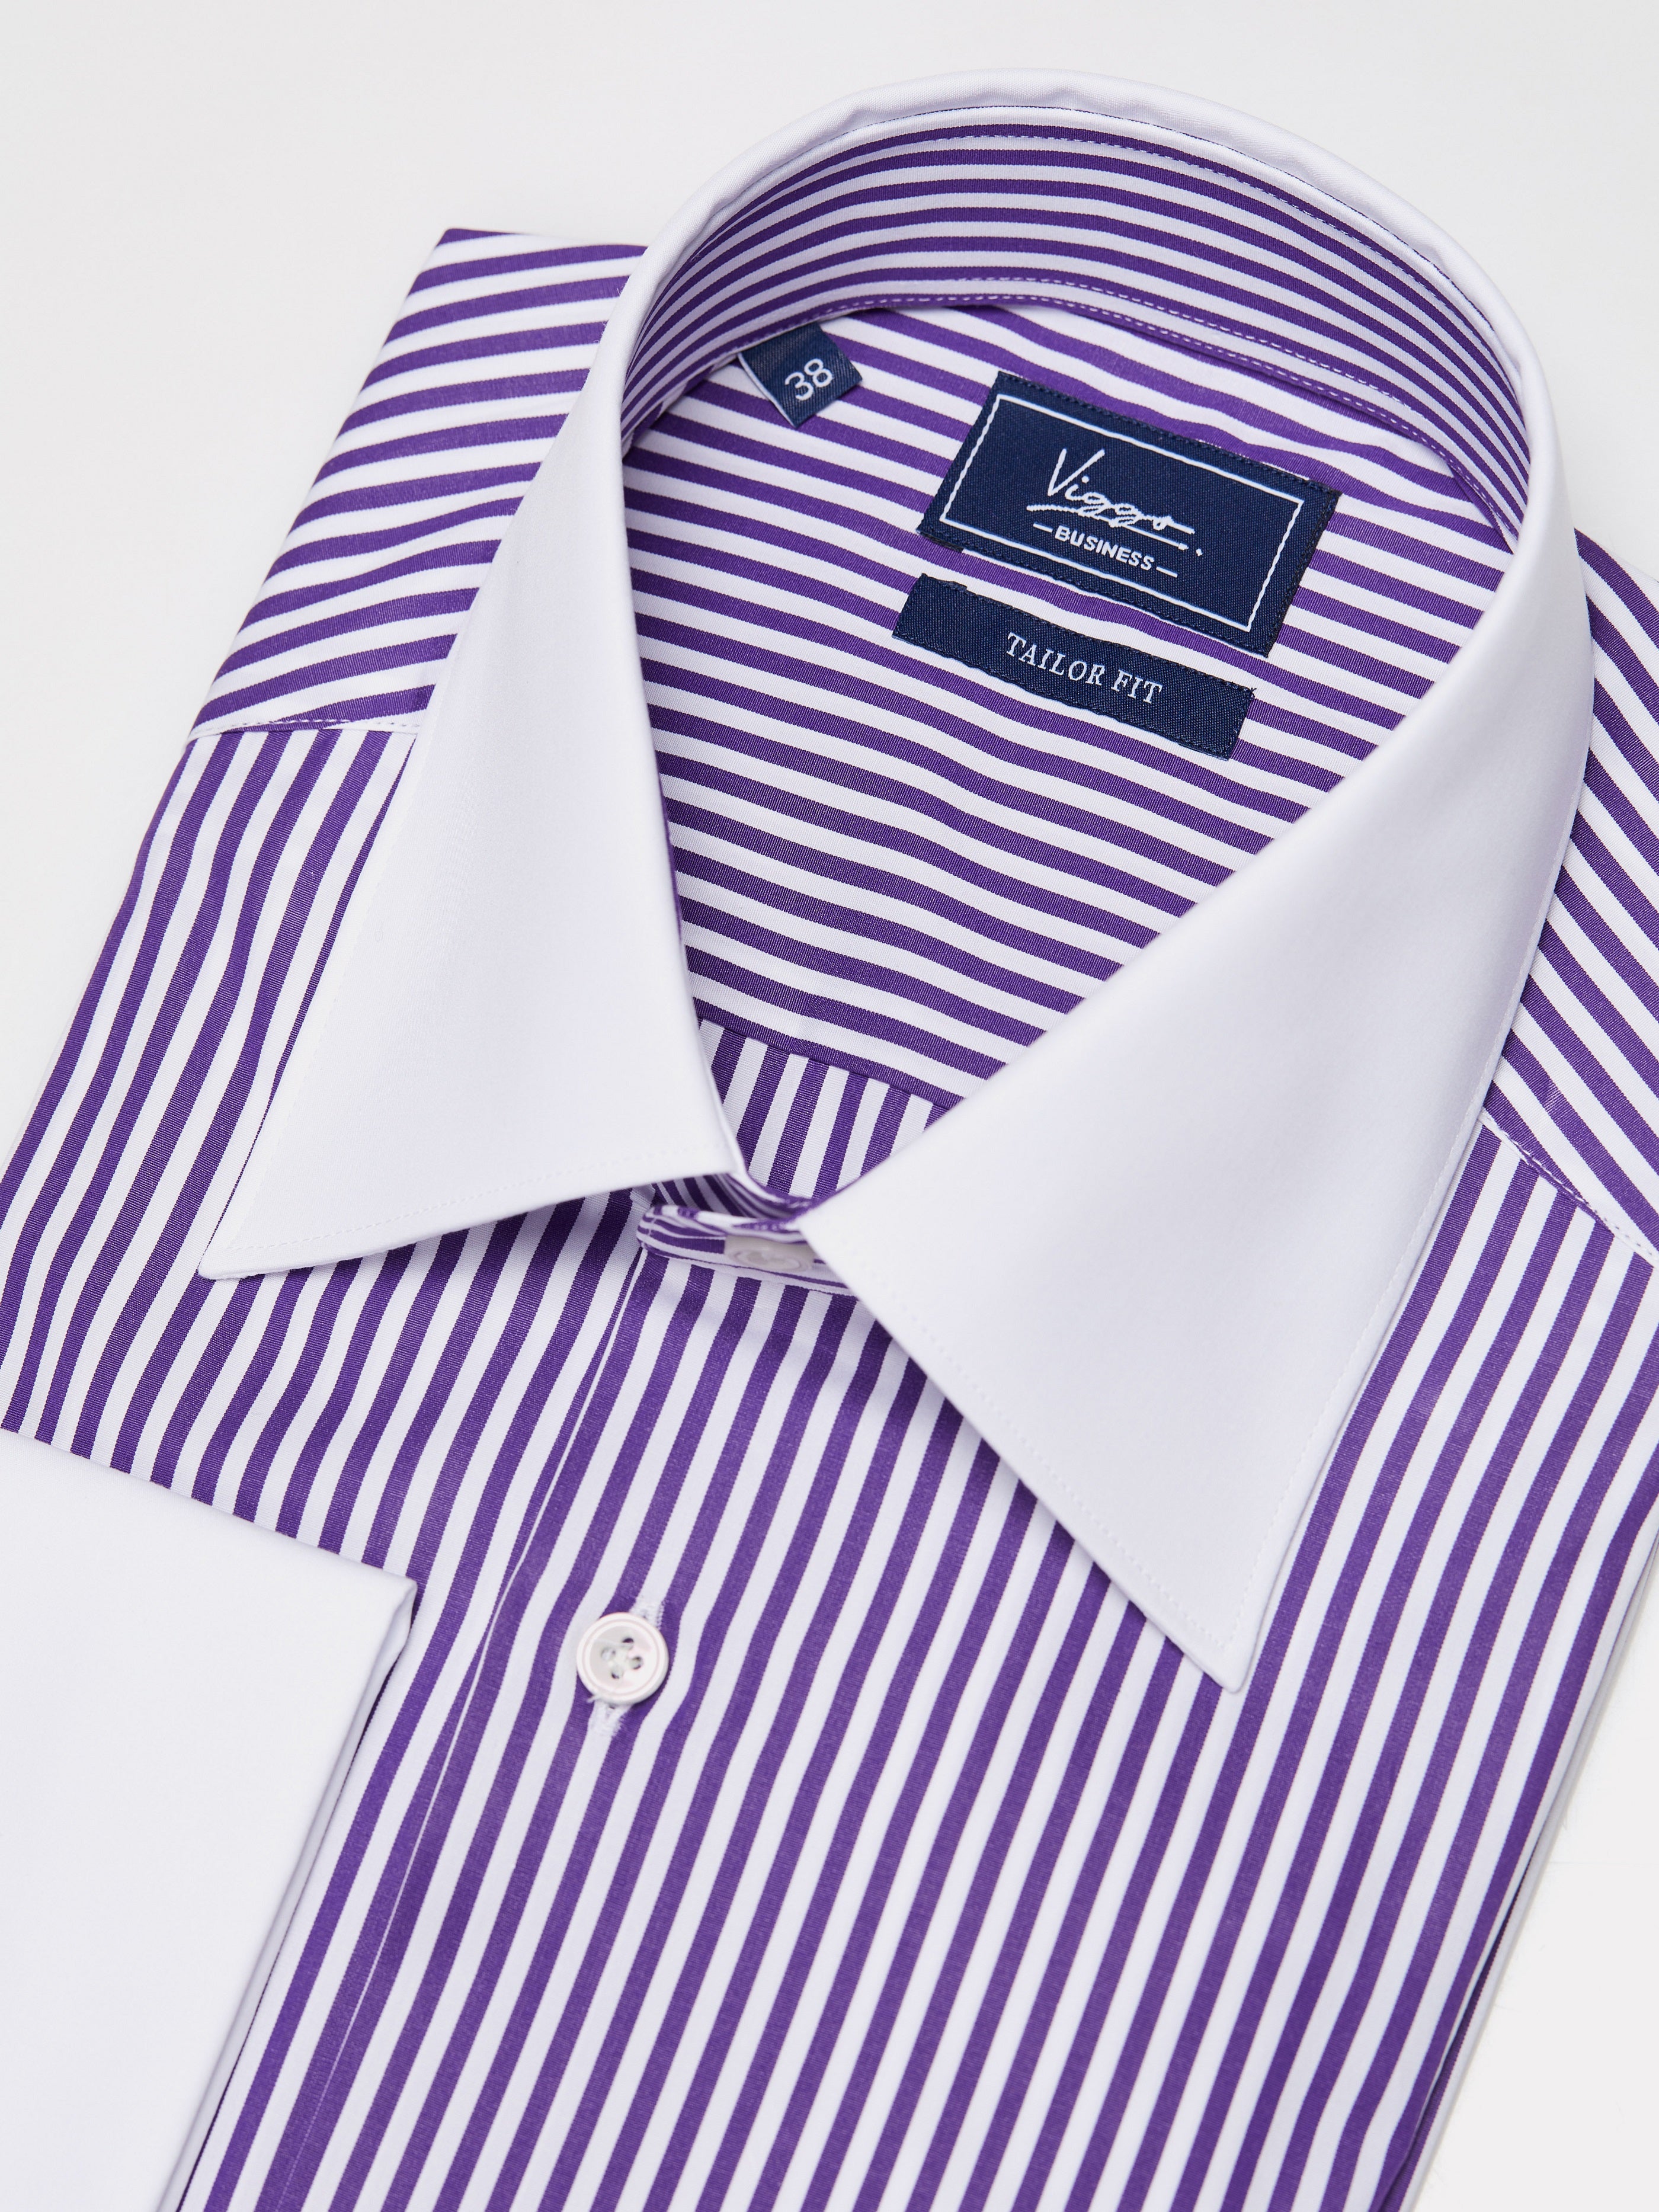 Camicia bianca a righe viola, polsini con bottoni